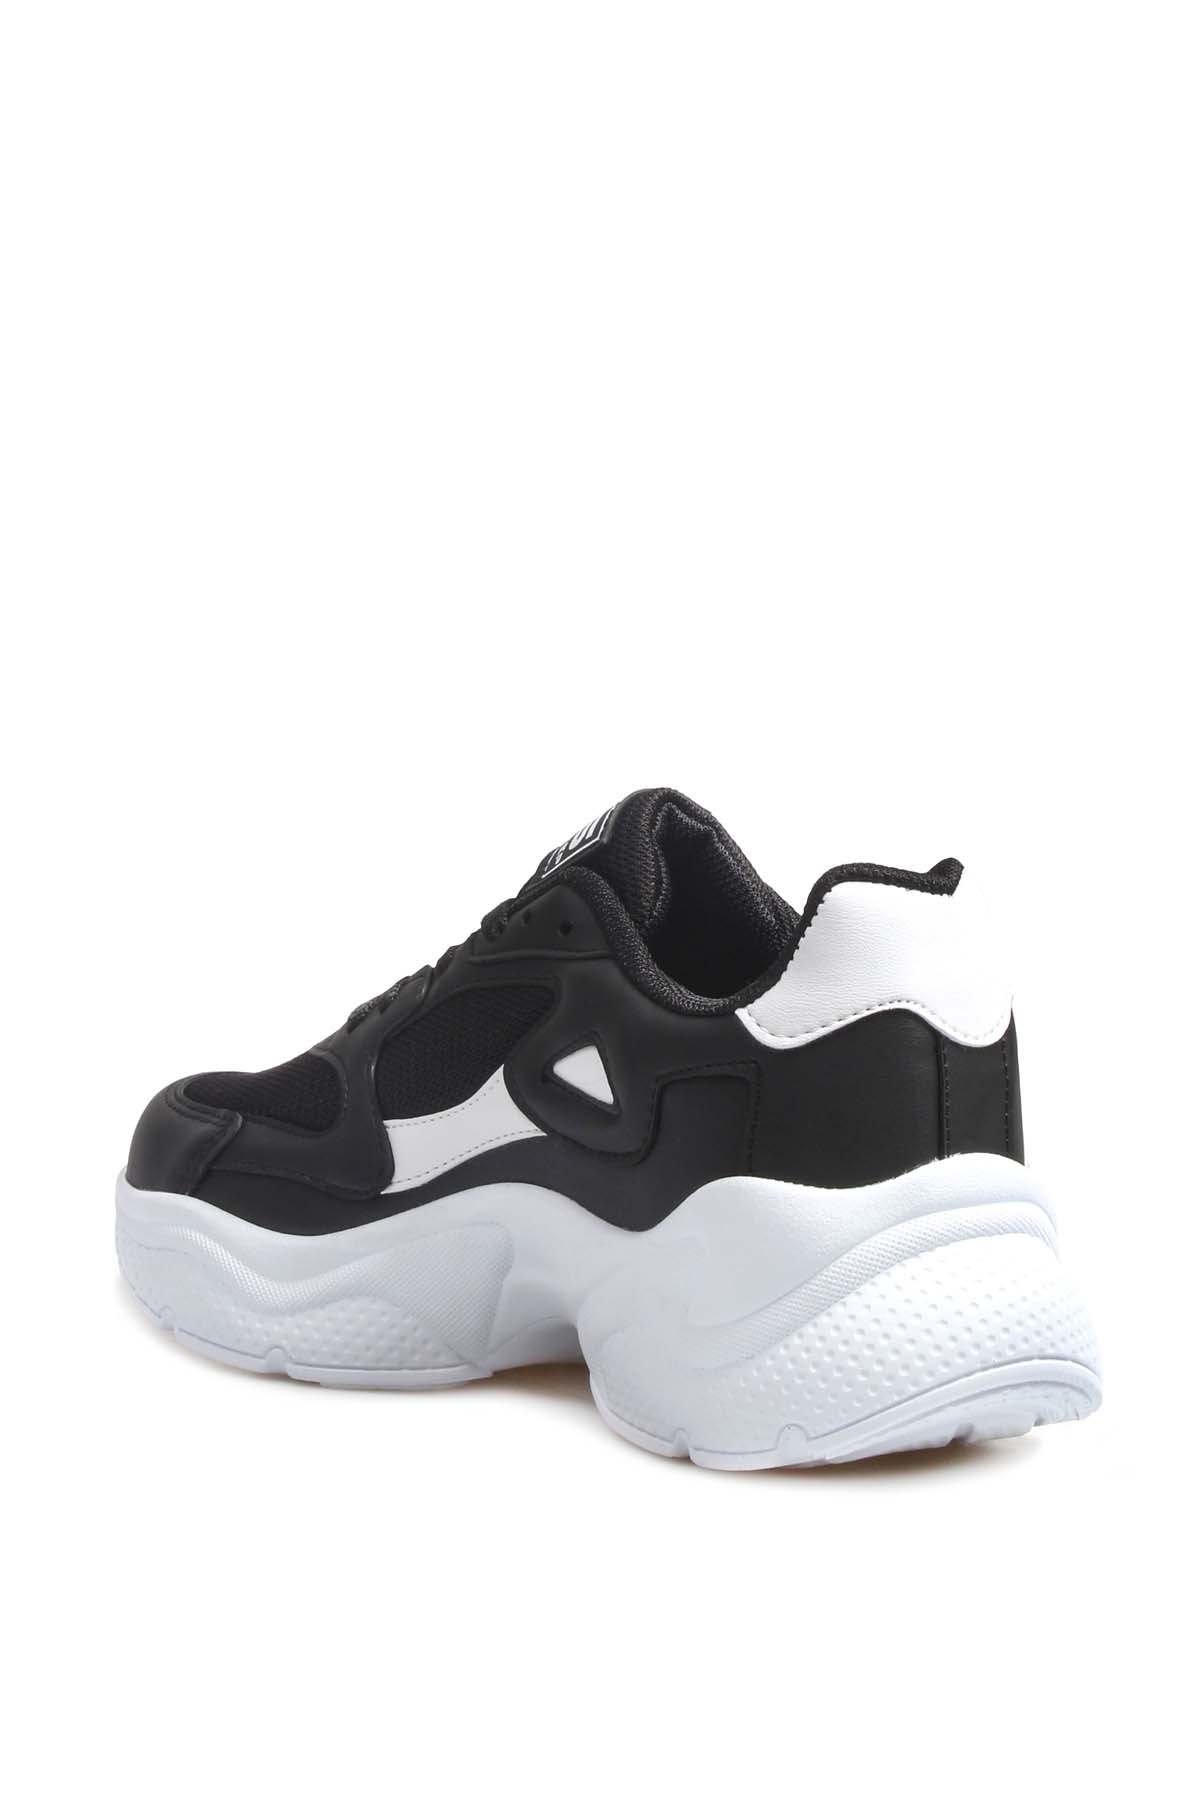 Fast Step Women Sports shoes Black White 666ZA152